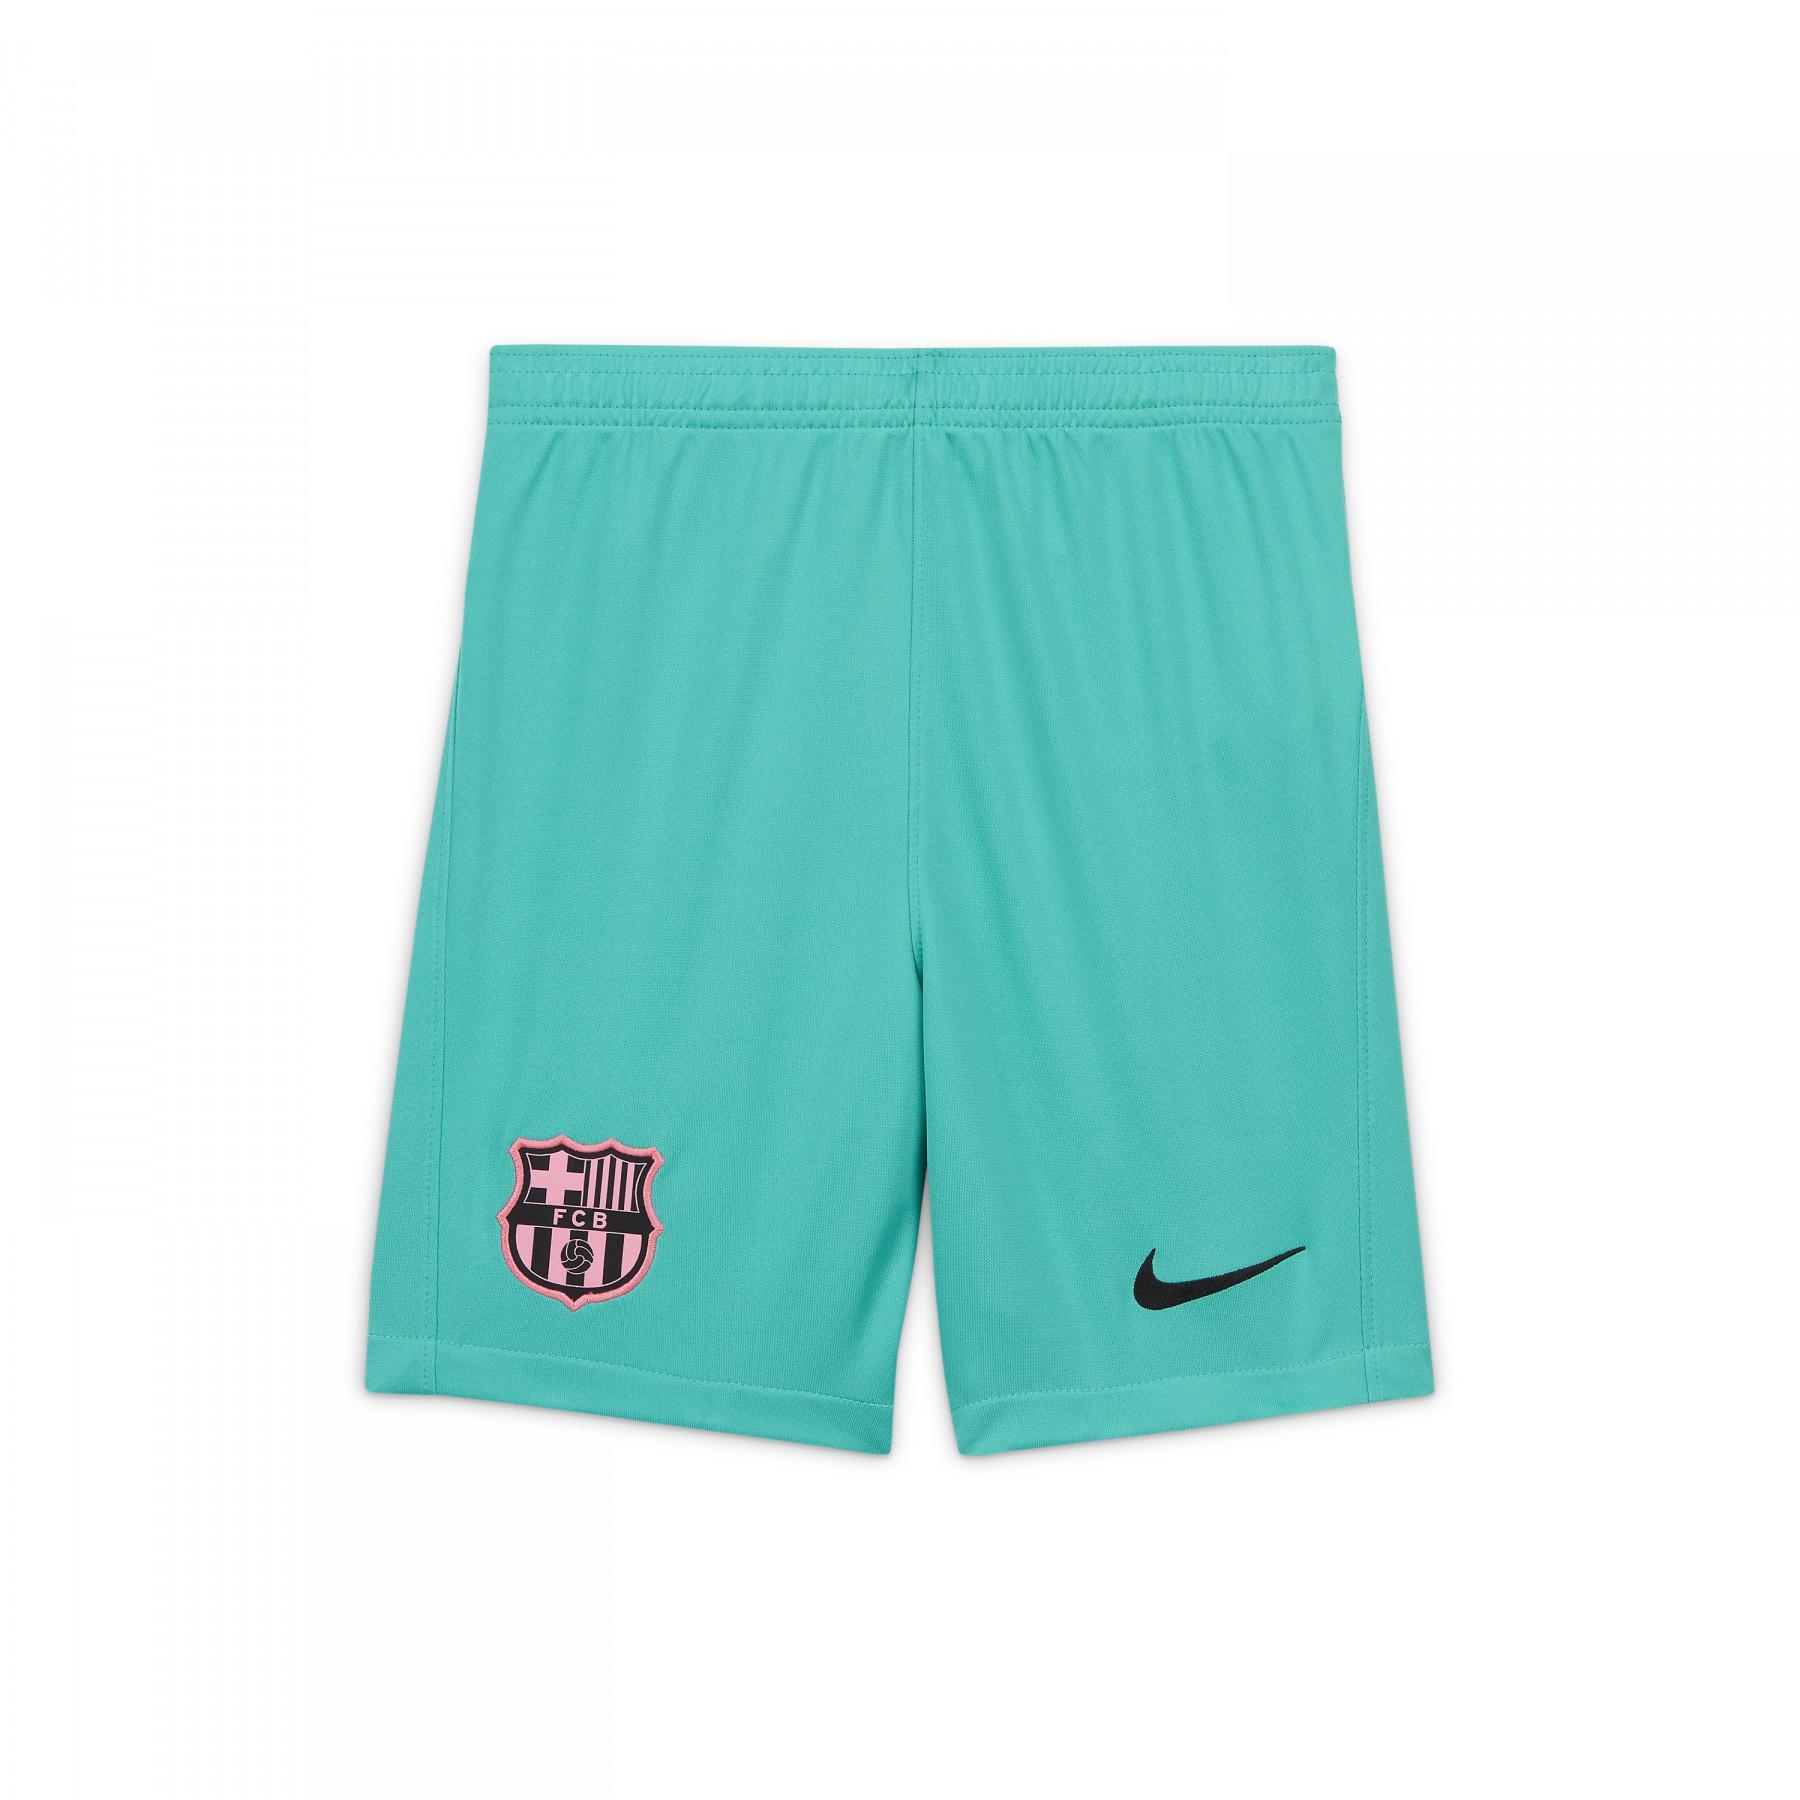 Pantalones cortos para niños estadio barcelona 2020/21